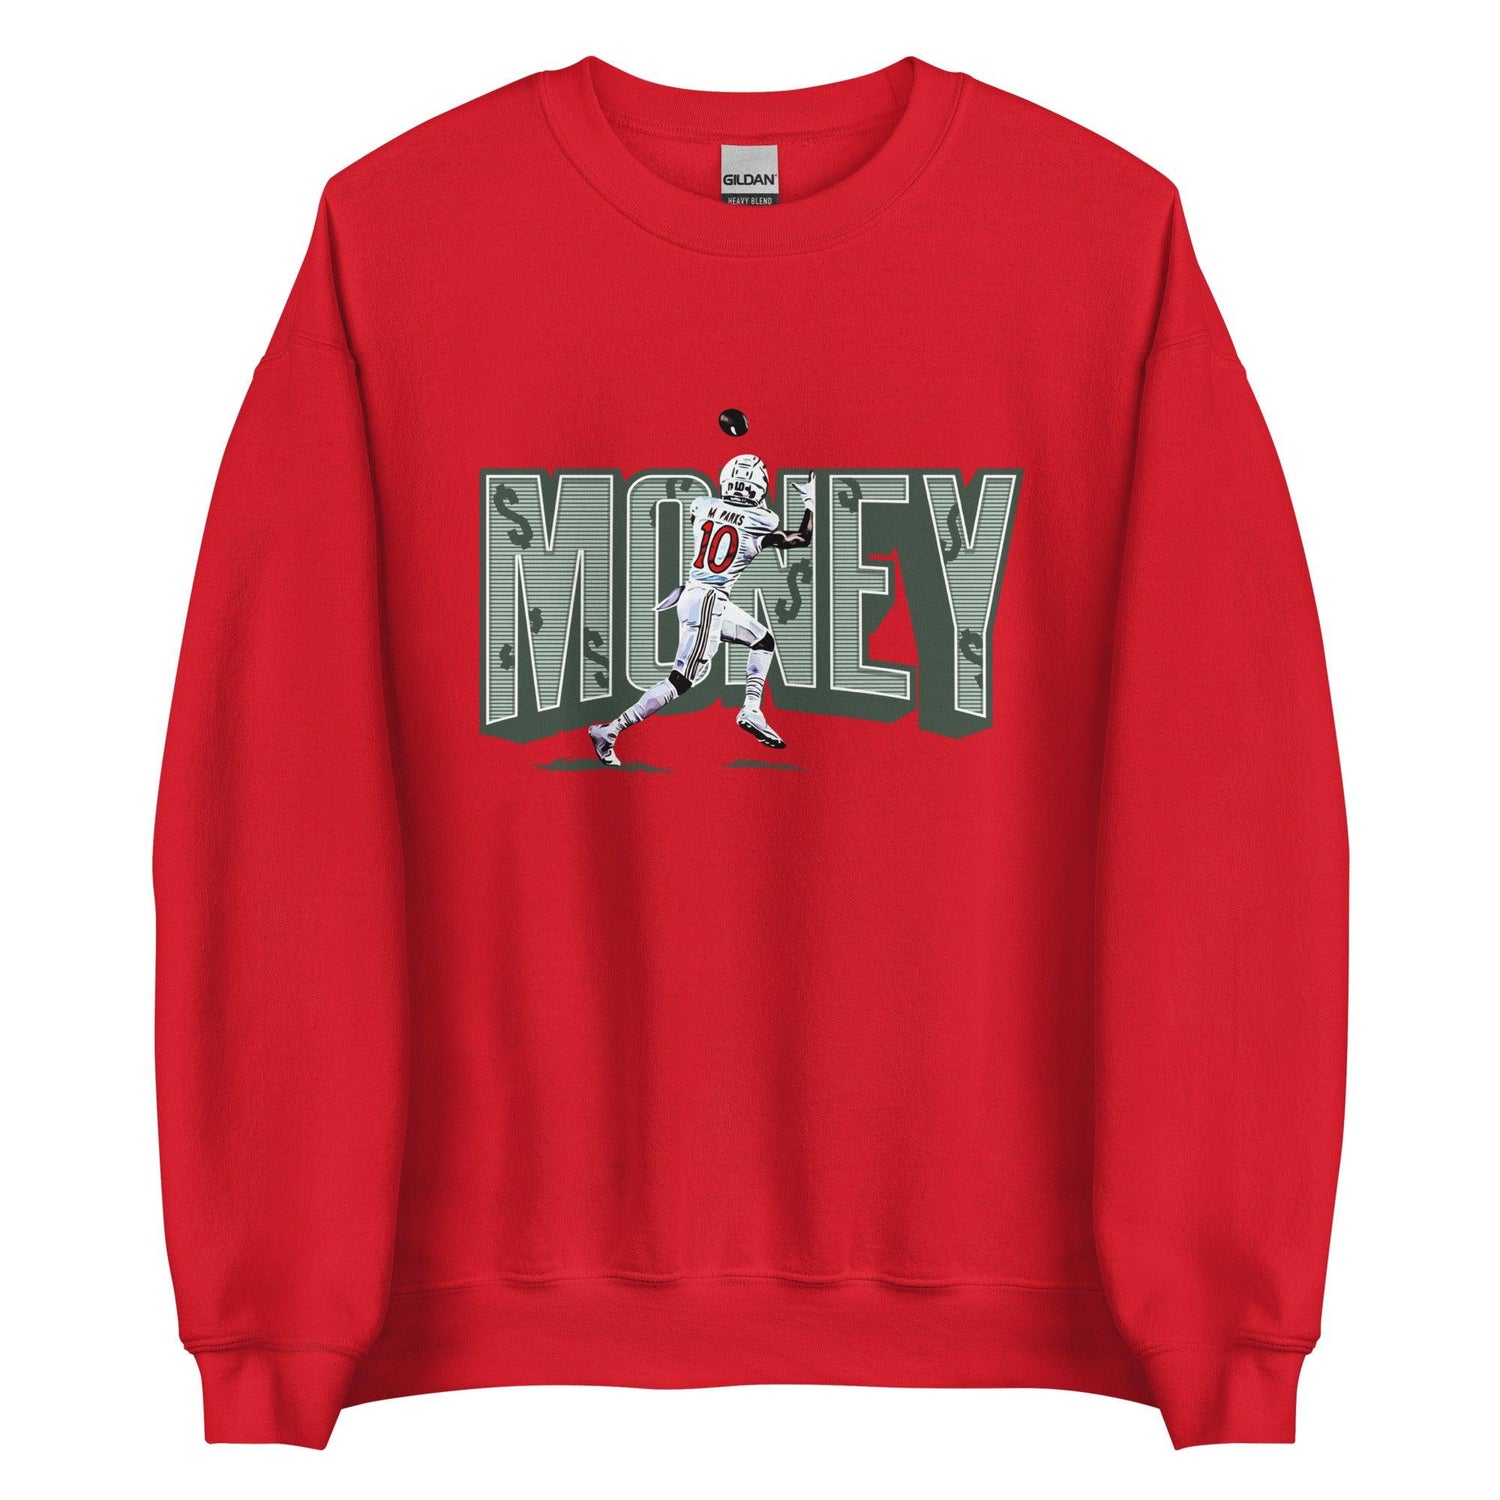 Money Parks "$$$" Sweatshirt - Fan Arch